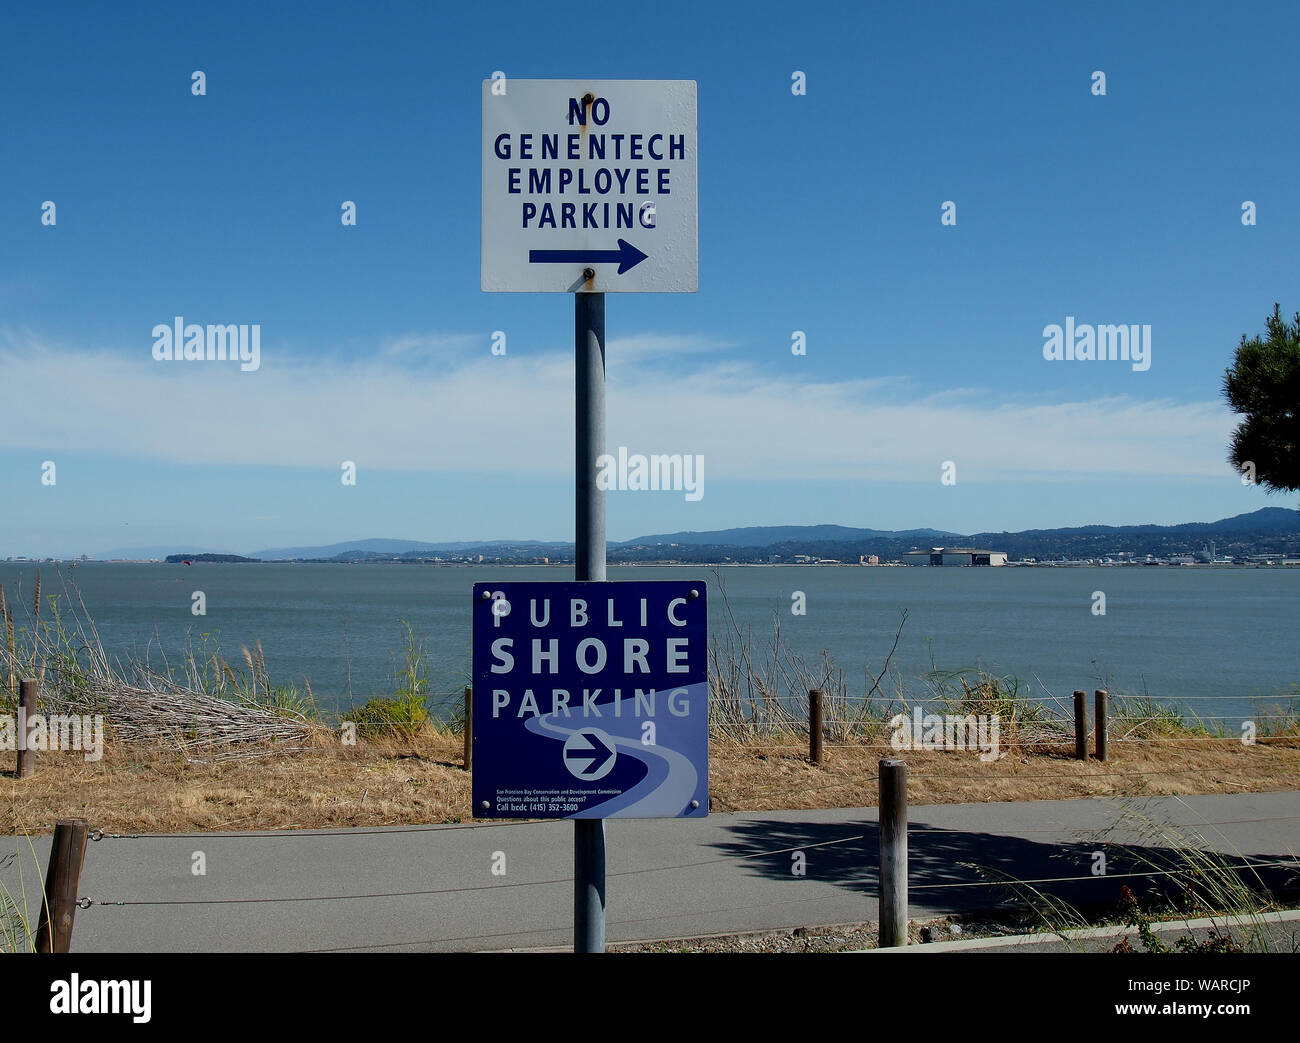 Pas de stationnement pour les employés et de Genentech Rive Public parking, signe à côté de sentier le long de la baie de San Francisco San Francisco, Californie du Sud Banque D'Images